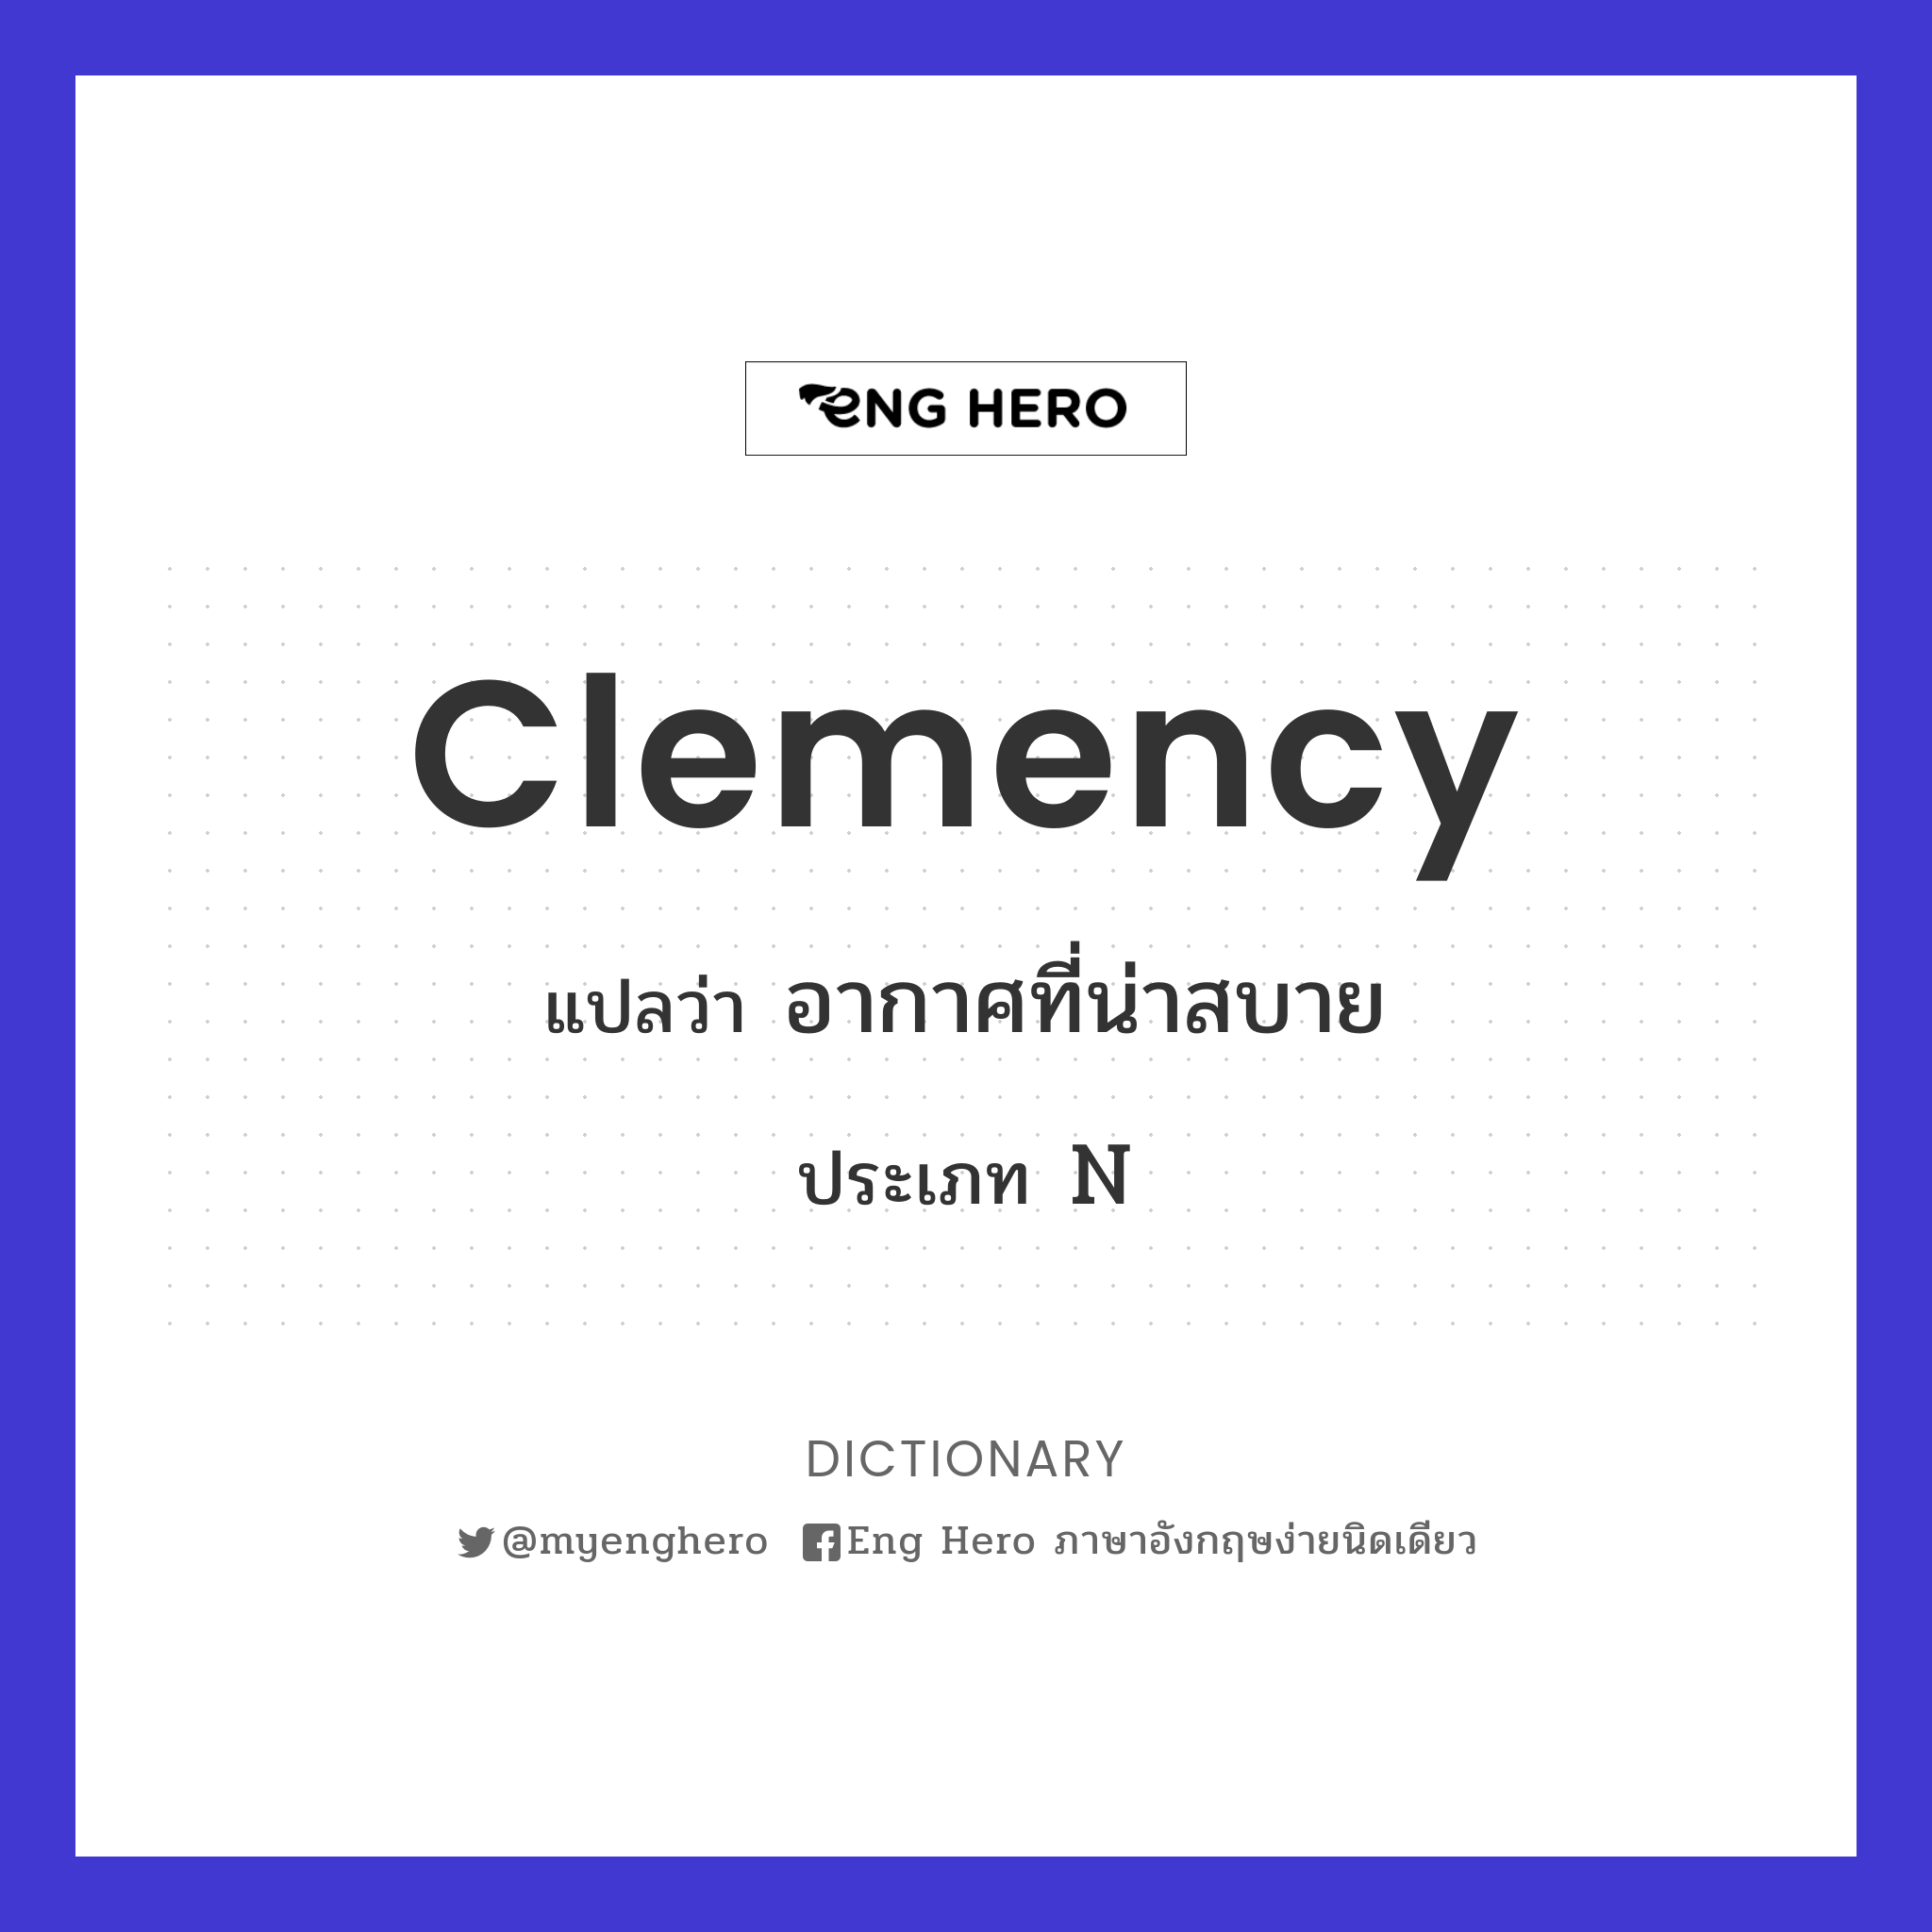 clemency